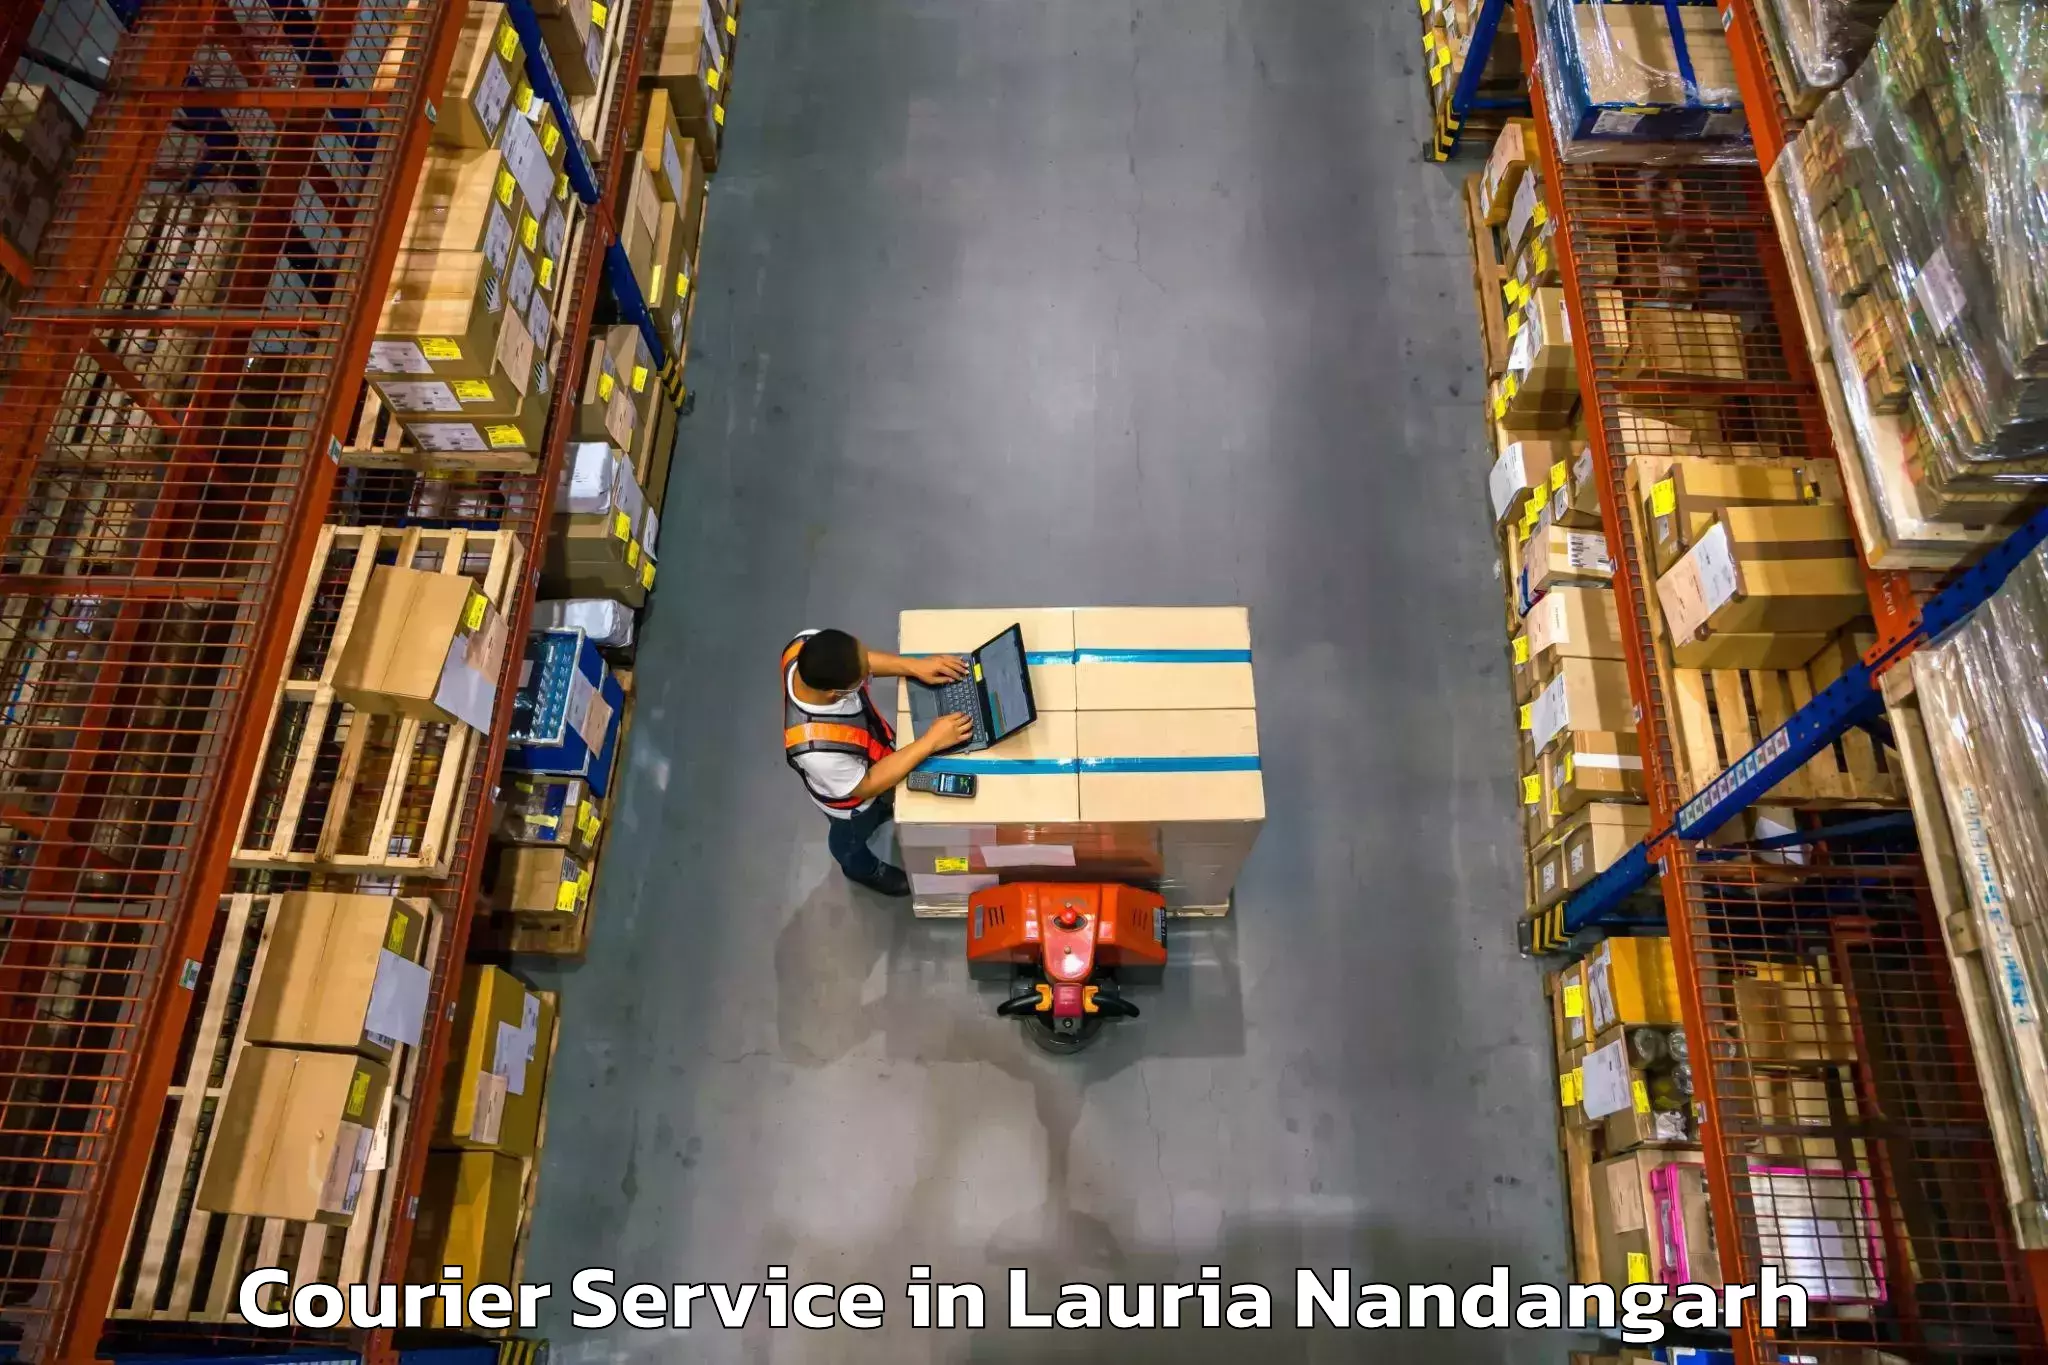 Efficient cargo handling in Lauria Nandangarh